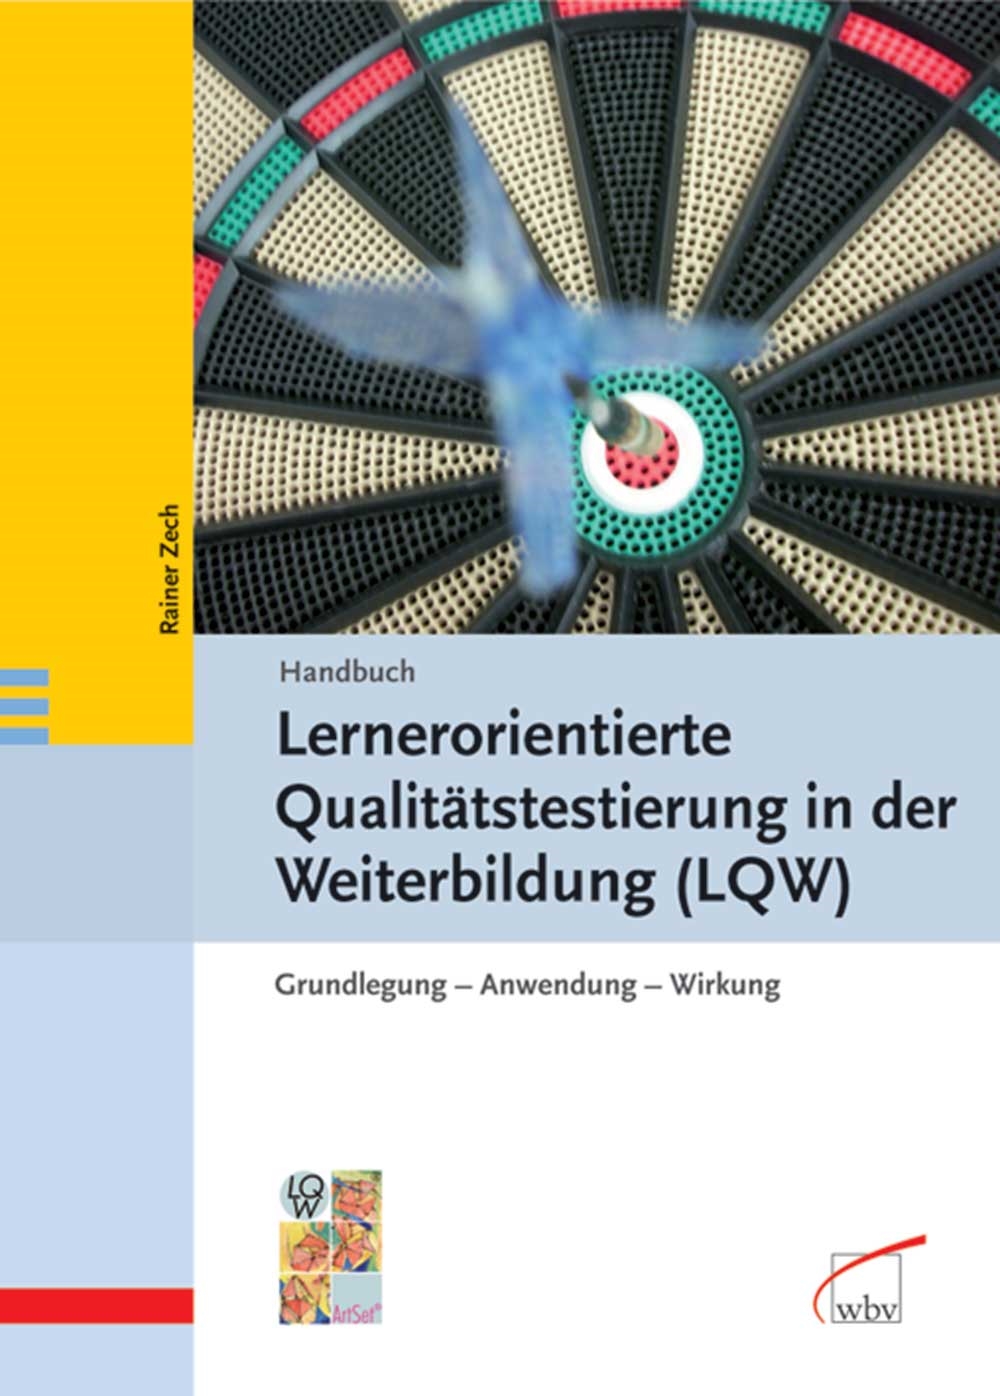 Handbuch Lernerorientierte Qualitätstestierung in der Weiterbildung (LQW)